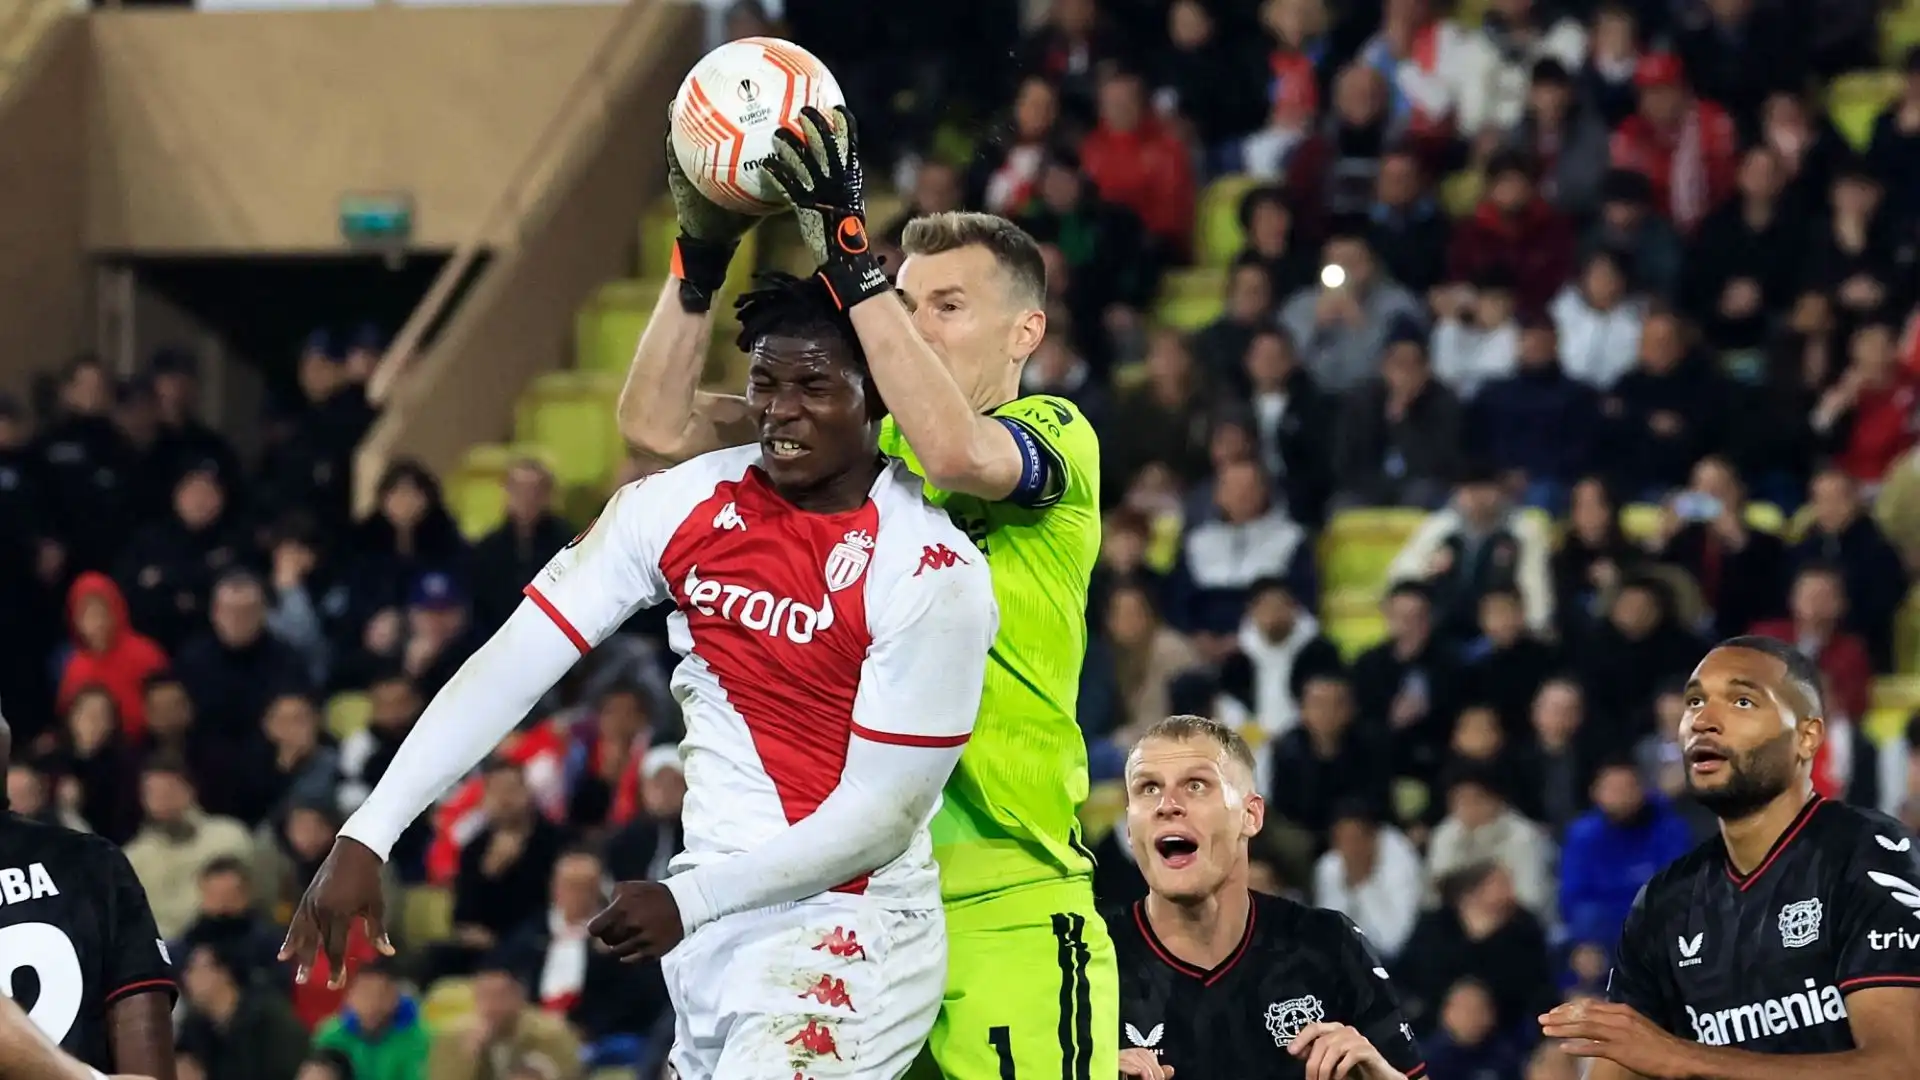 La partita tra Monaco e Leverkusen è finita 2-3 dopo i tempi regolamentari e supplementari, lo stesso risultato dell'andata